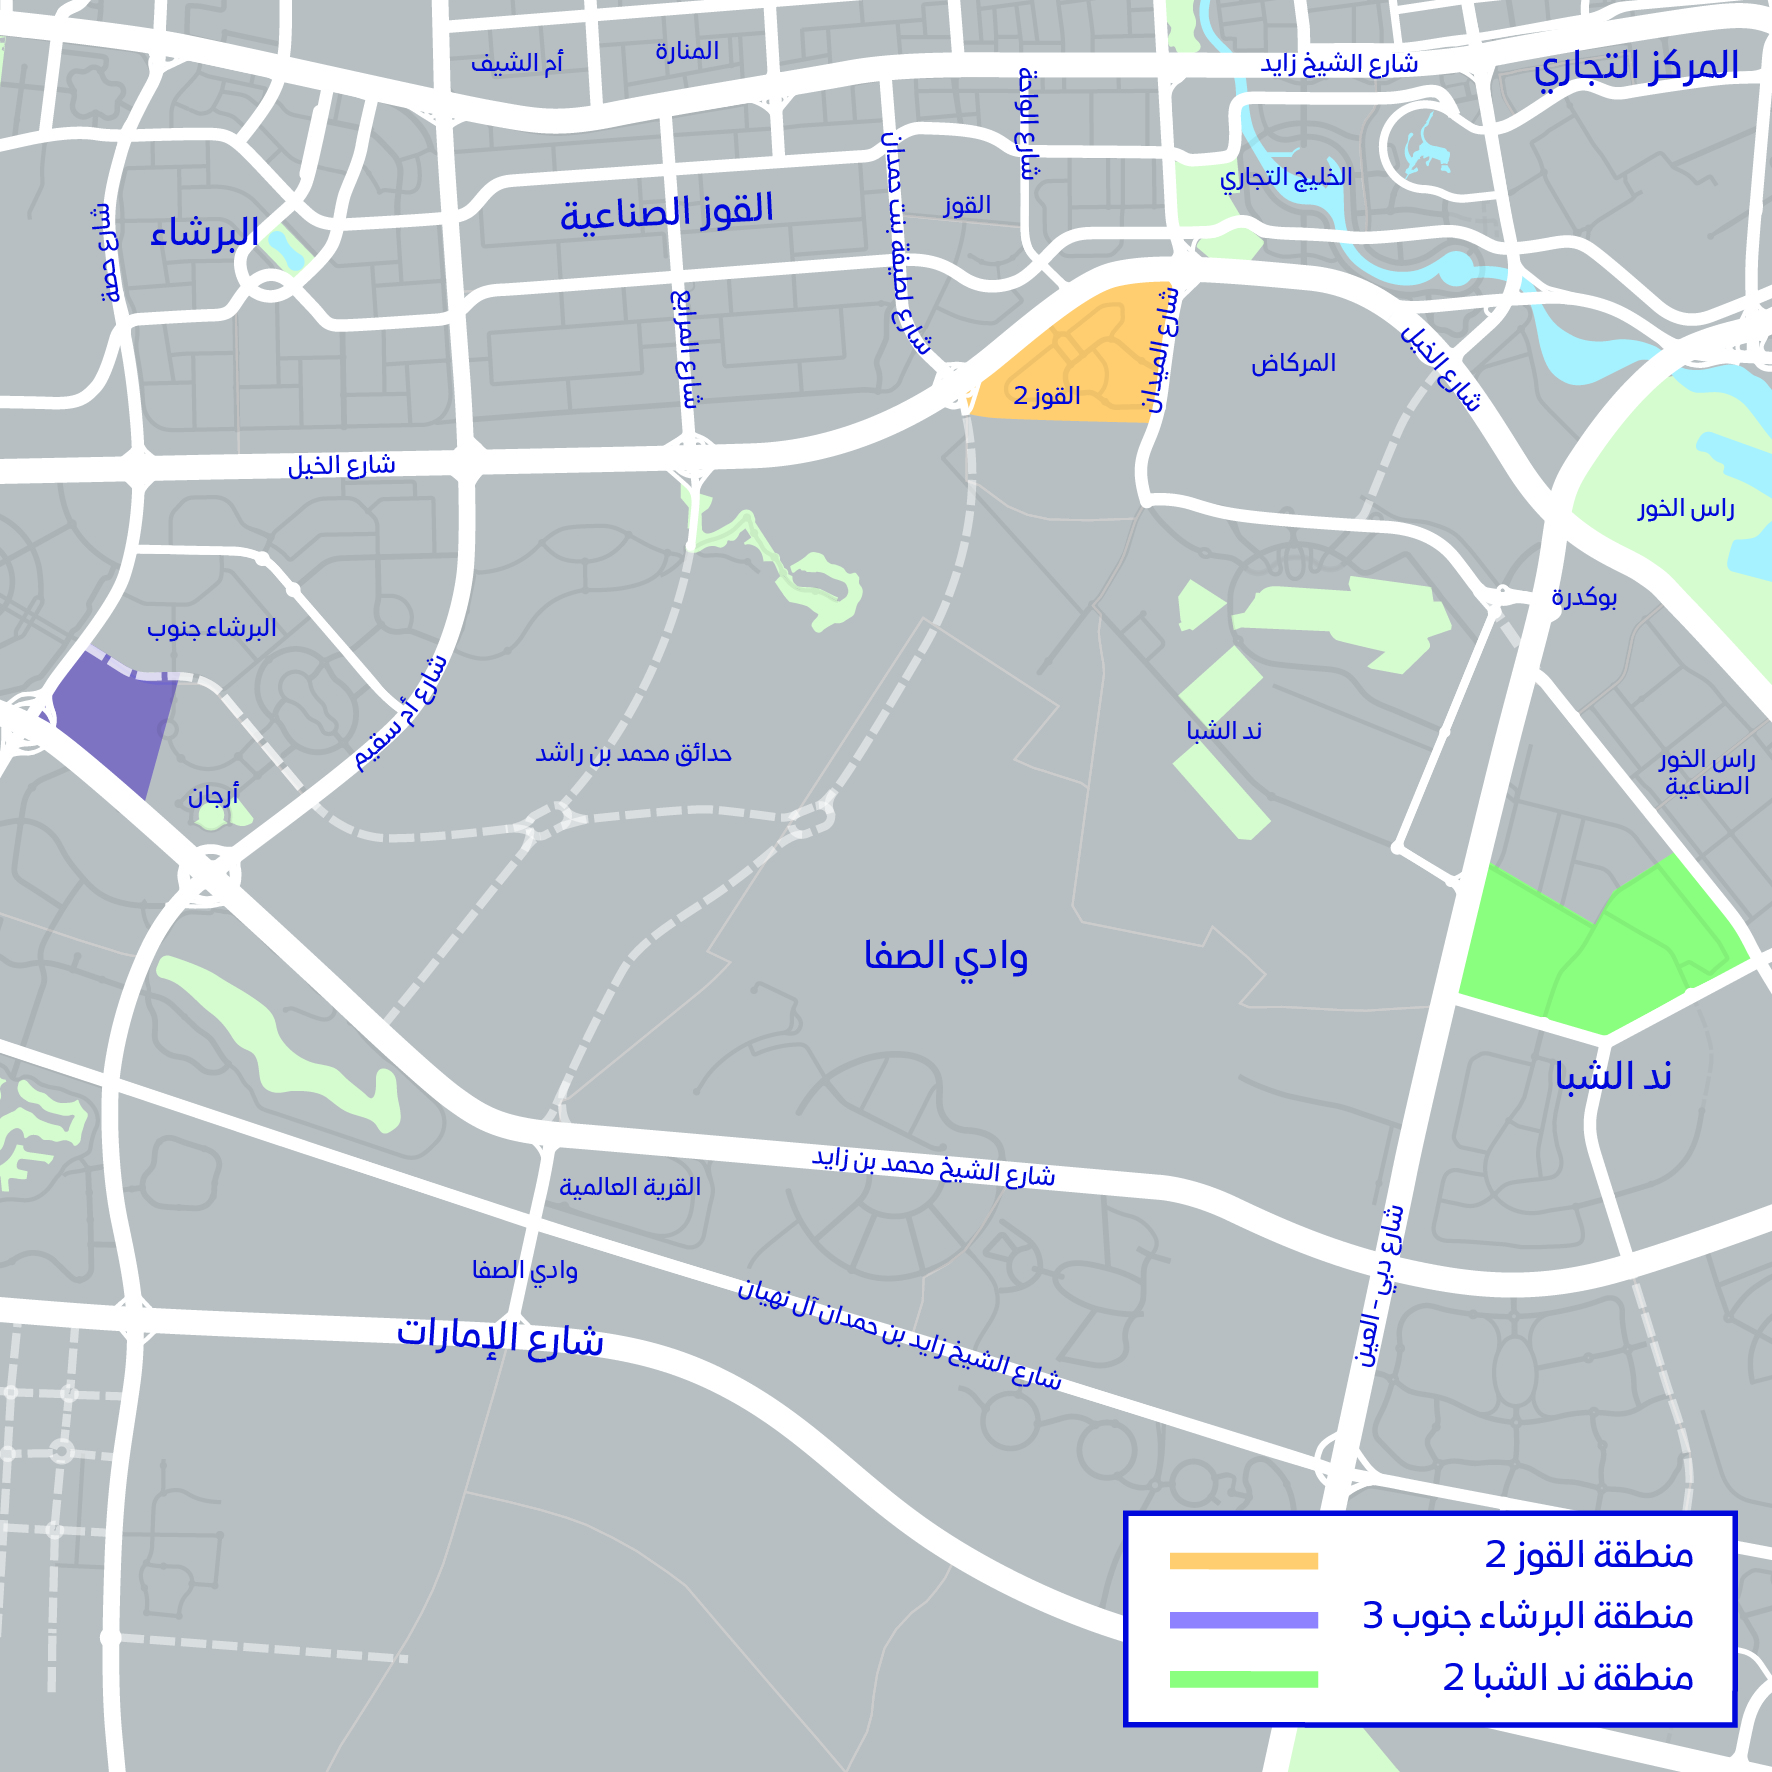 طرق دبي ترسي عقد تنفيذ طرق داخلية في 3 مناطق سكنية بطول 34.4 كم